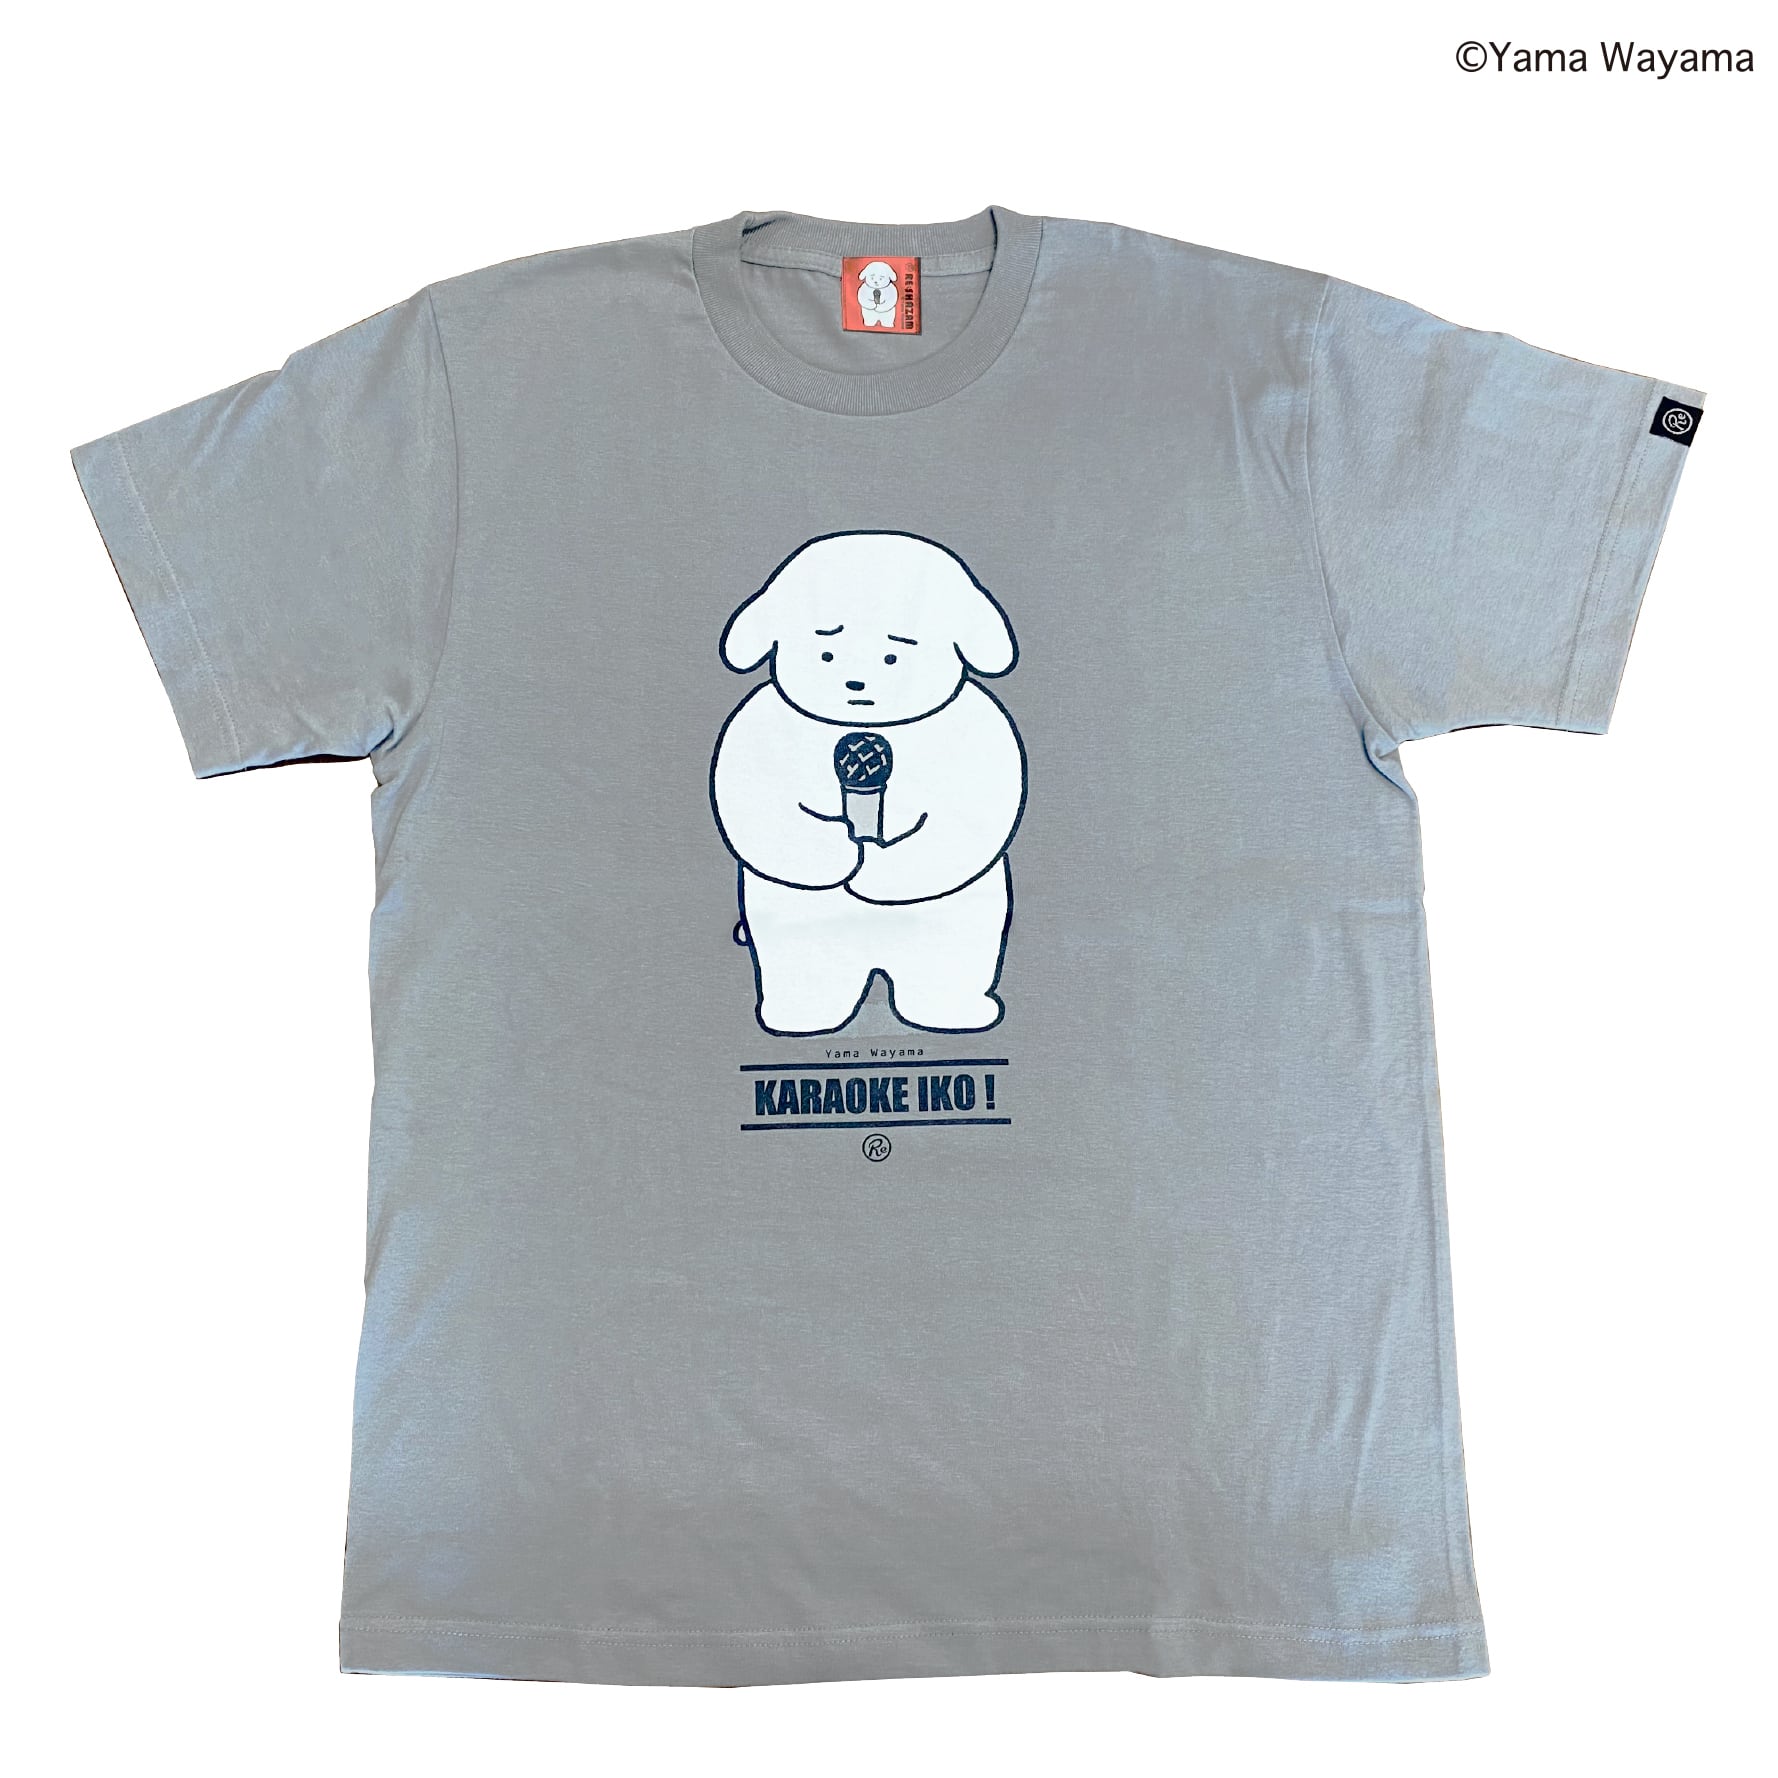 描き下ろし商品〈和山やま〉「カラオケ行こ! 」和山先生の犬 Tシャツ | RE:SHAZAM